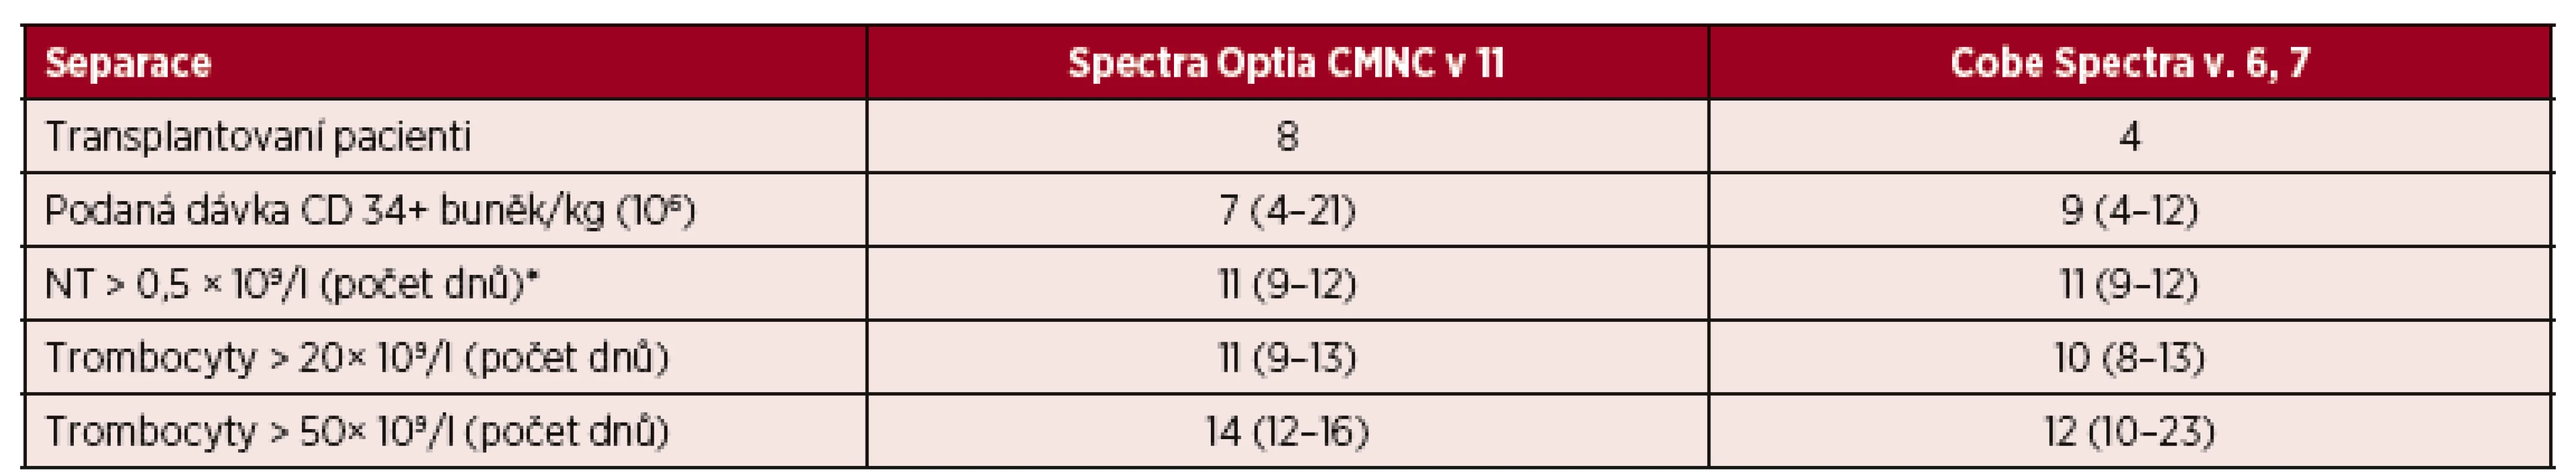 Standardní separace PBPC autologní – CMNC Spectra Optia a Cobe Spectra, doba přihojení štěpů v počtu neutrofilních leukocytů a trombocytů